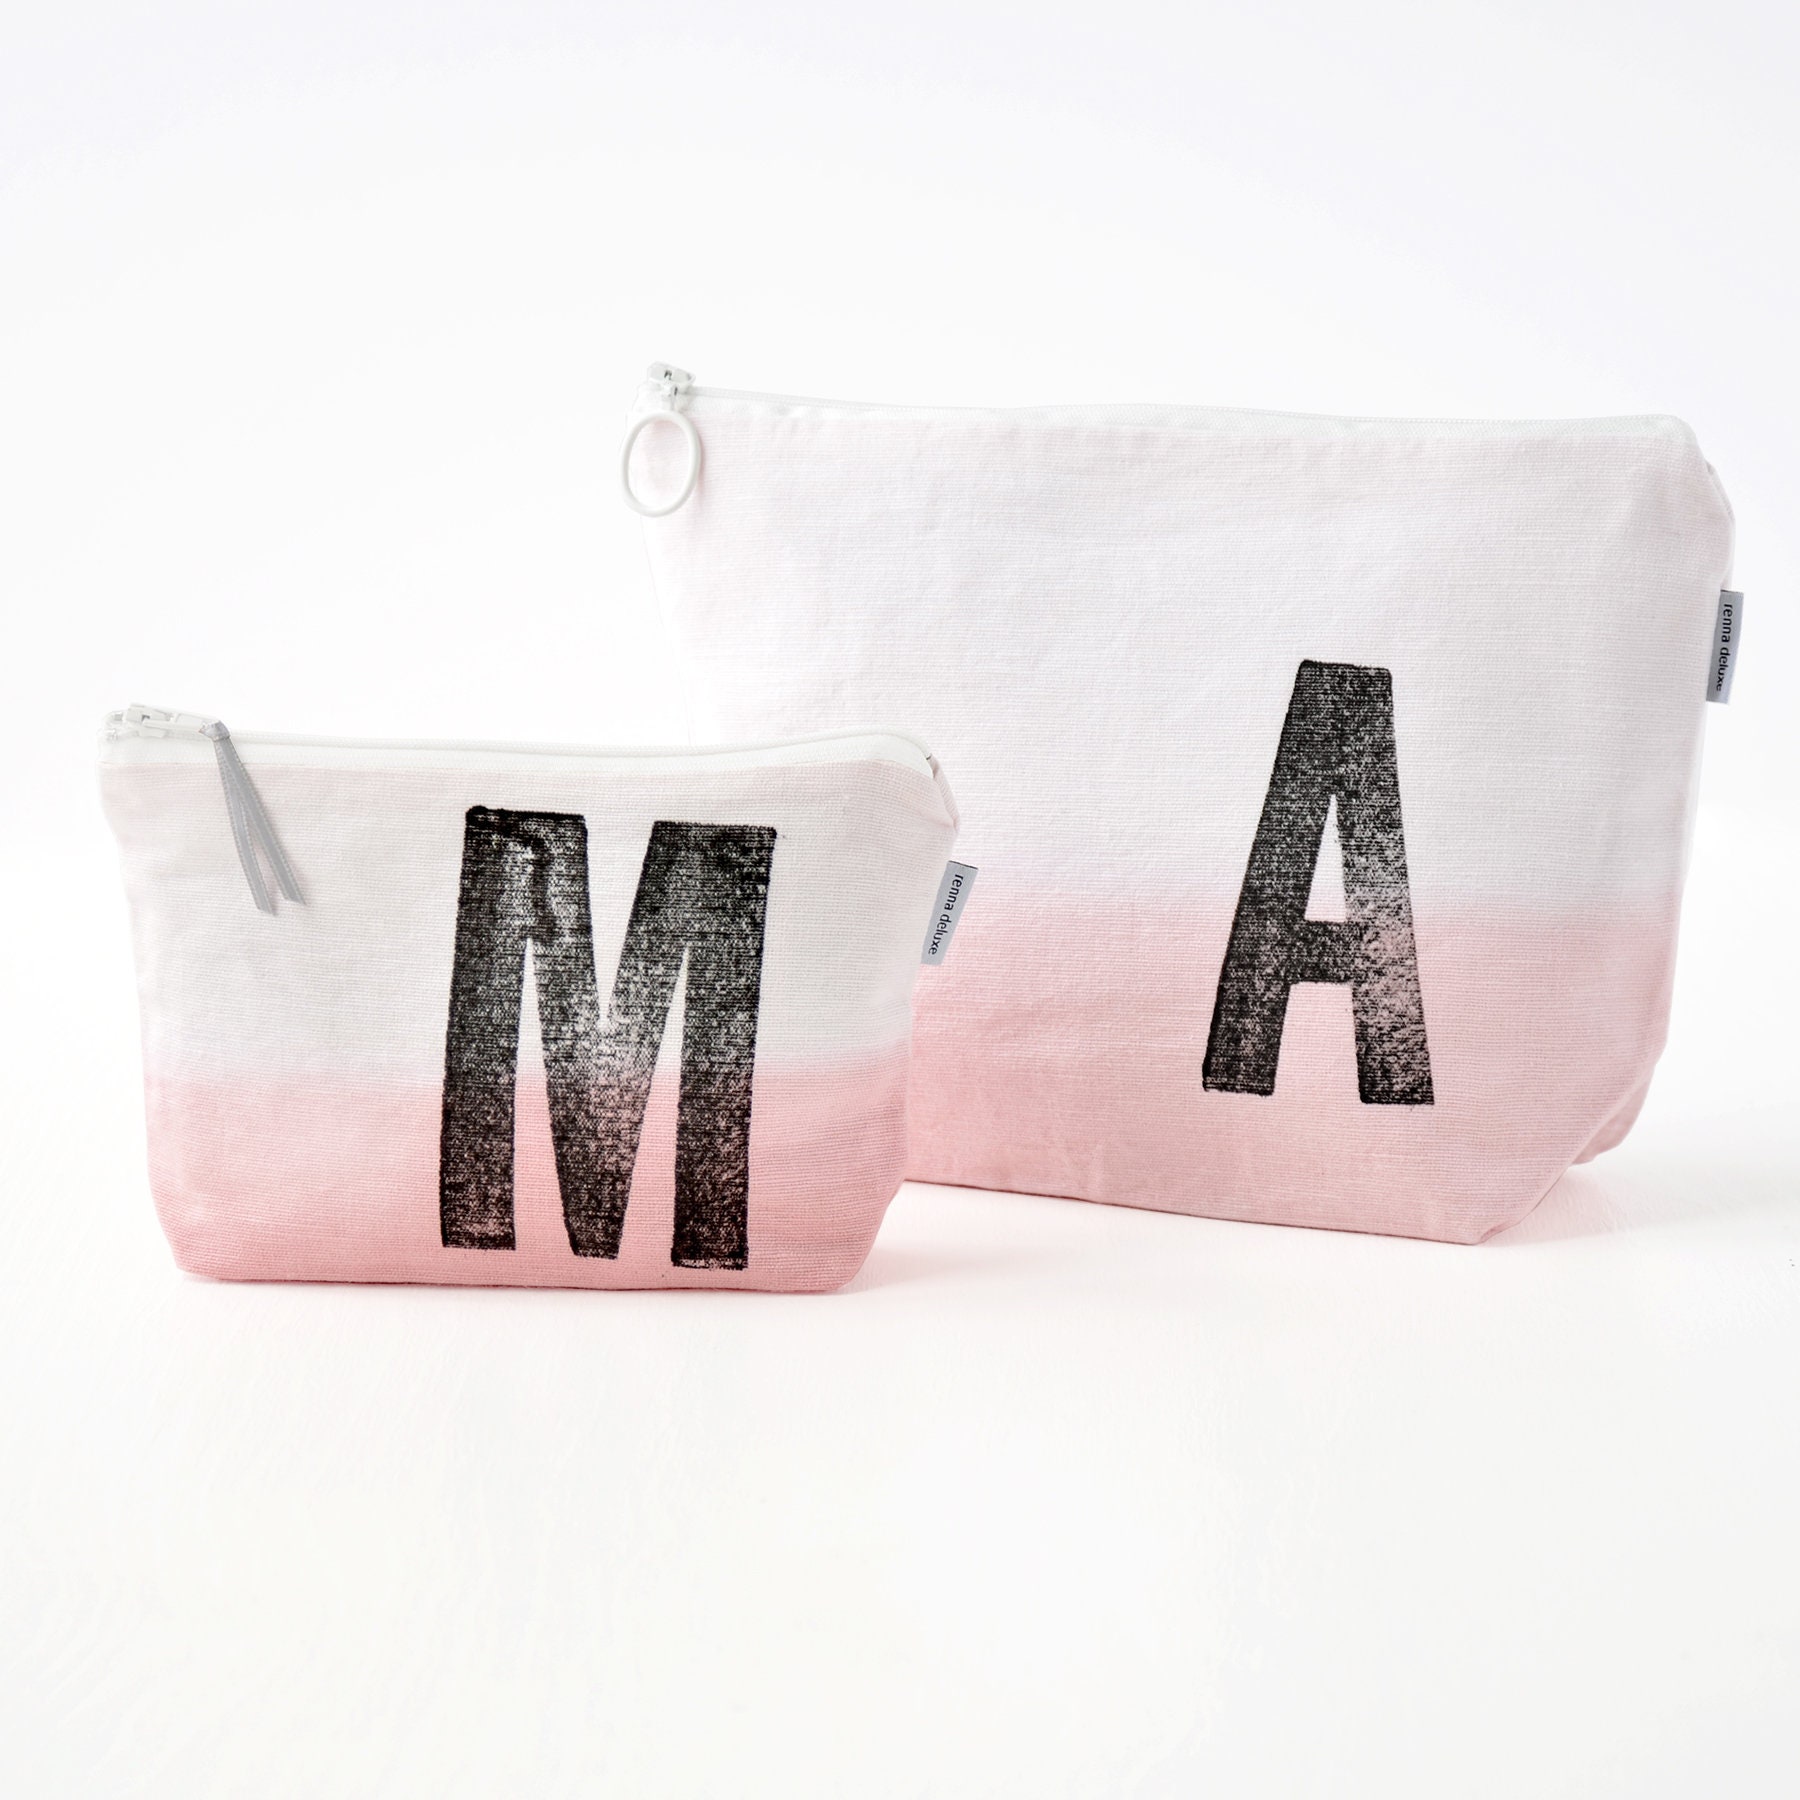 Humdakin - Cosmetic bag with monogram